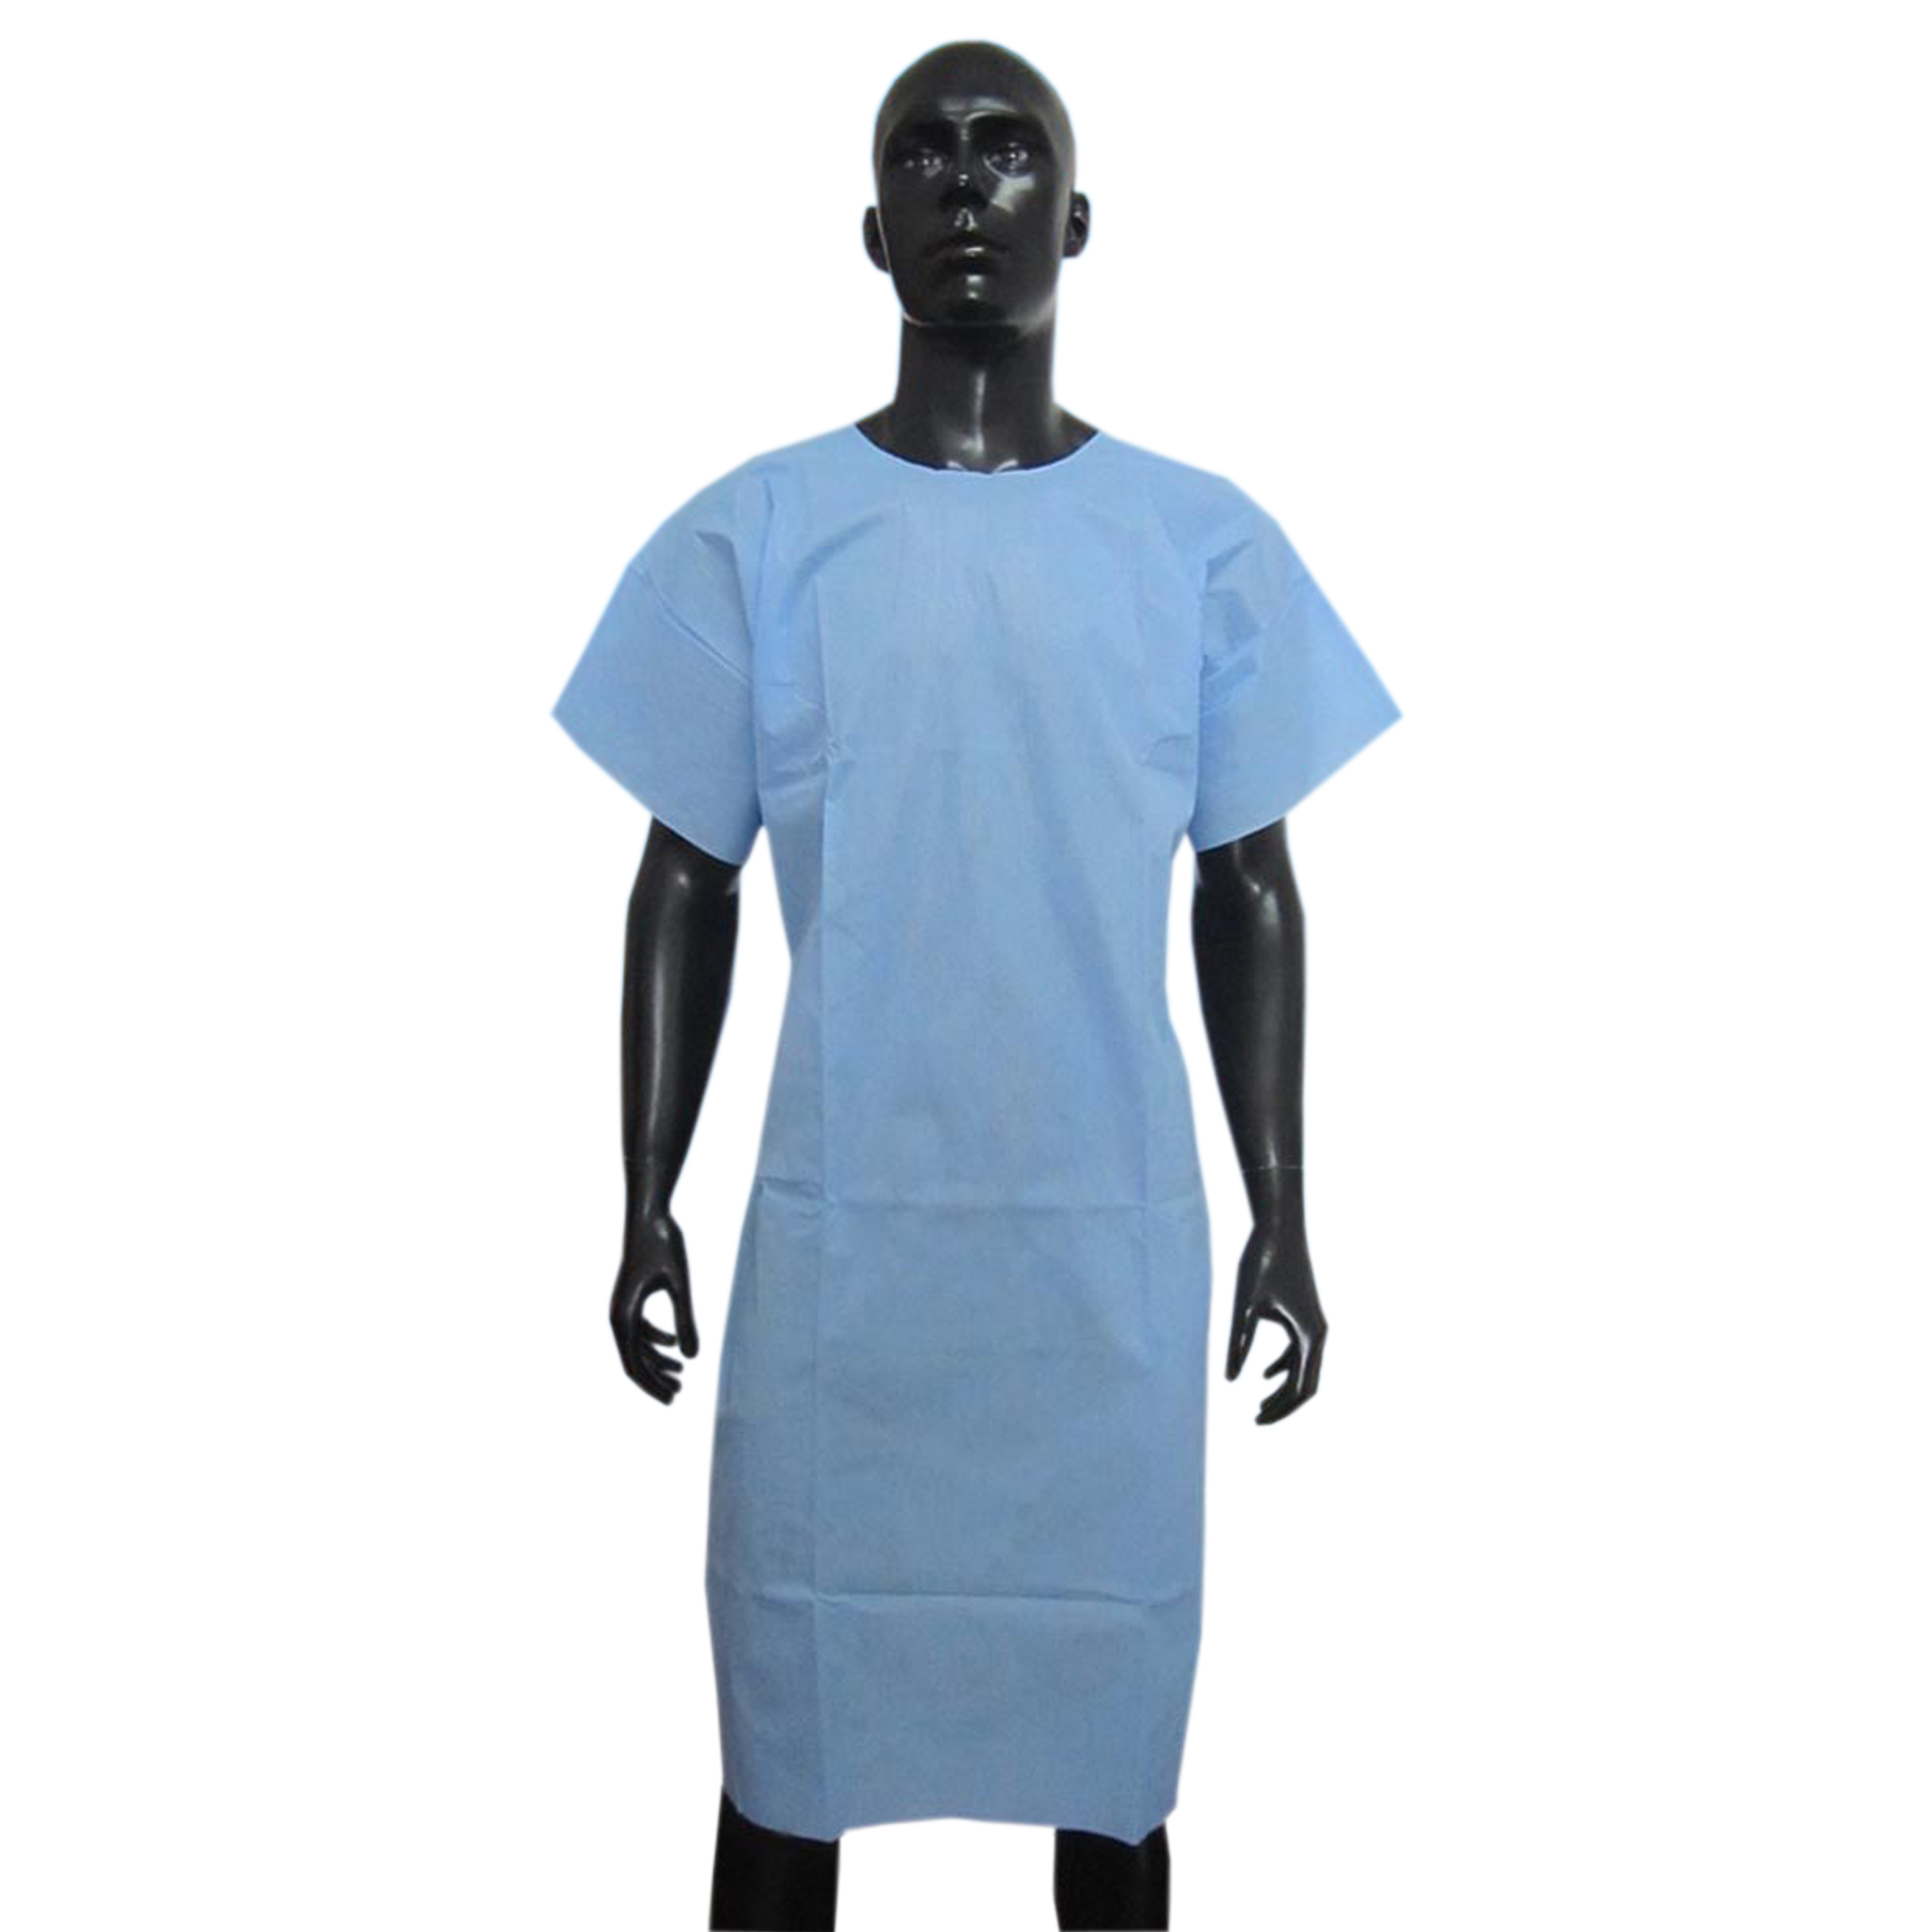 長袖のSMS患者衣。使い捨てのSMS患者用ガウン